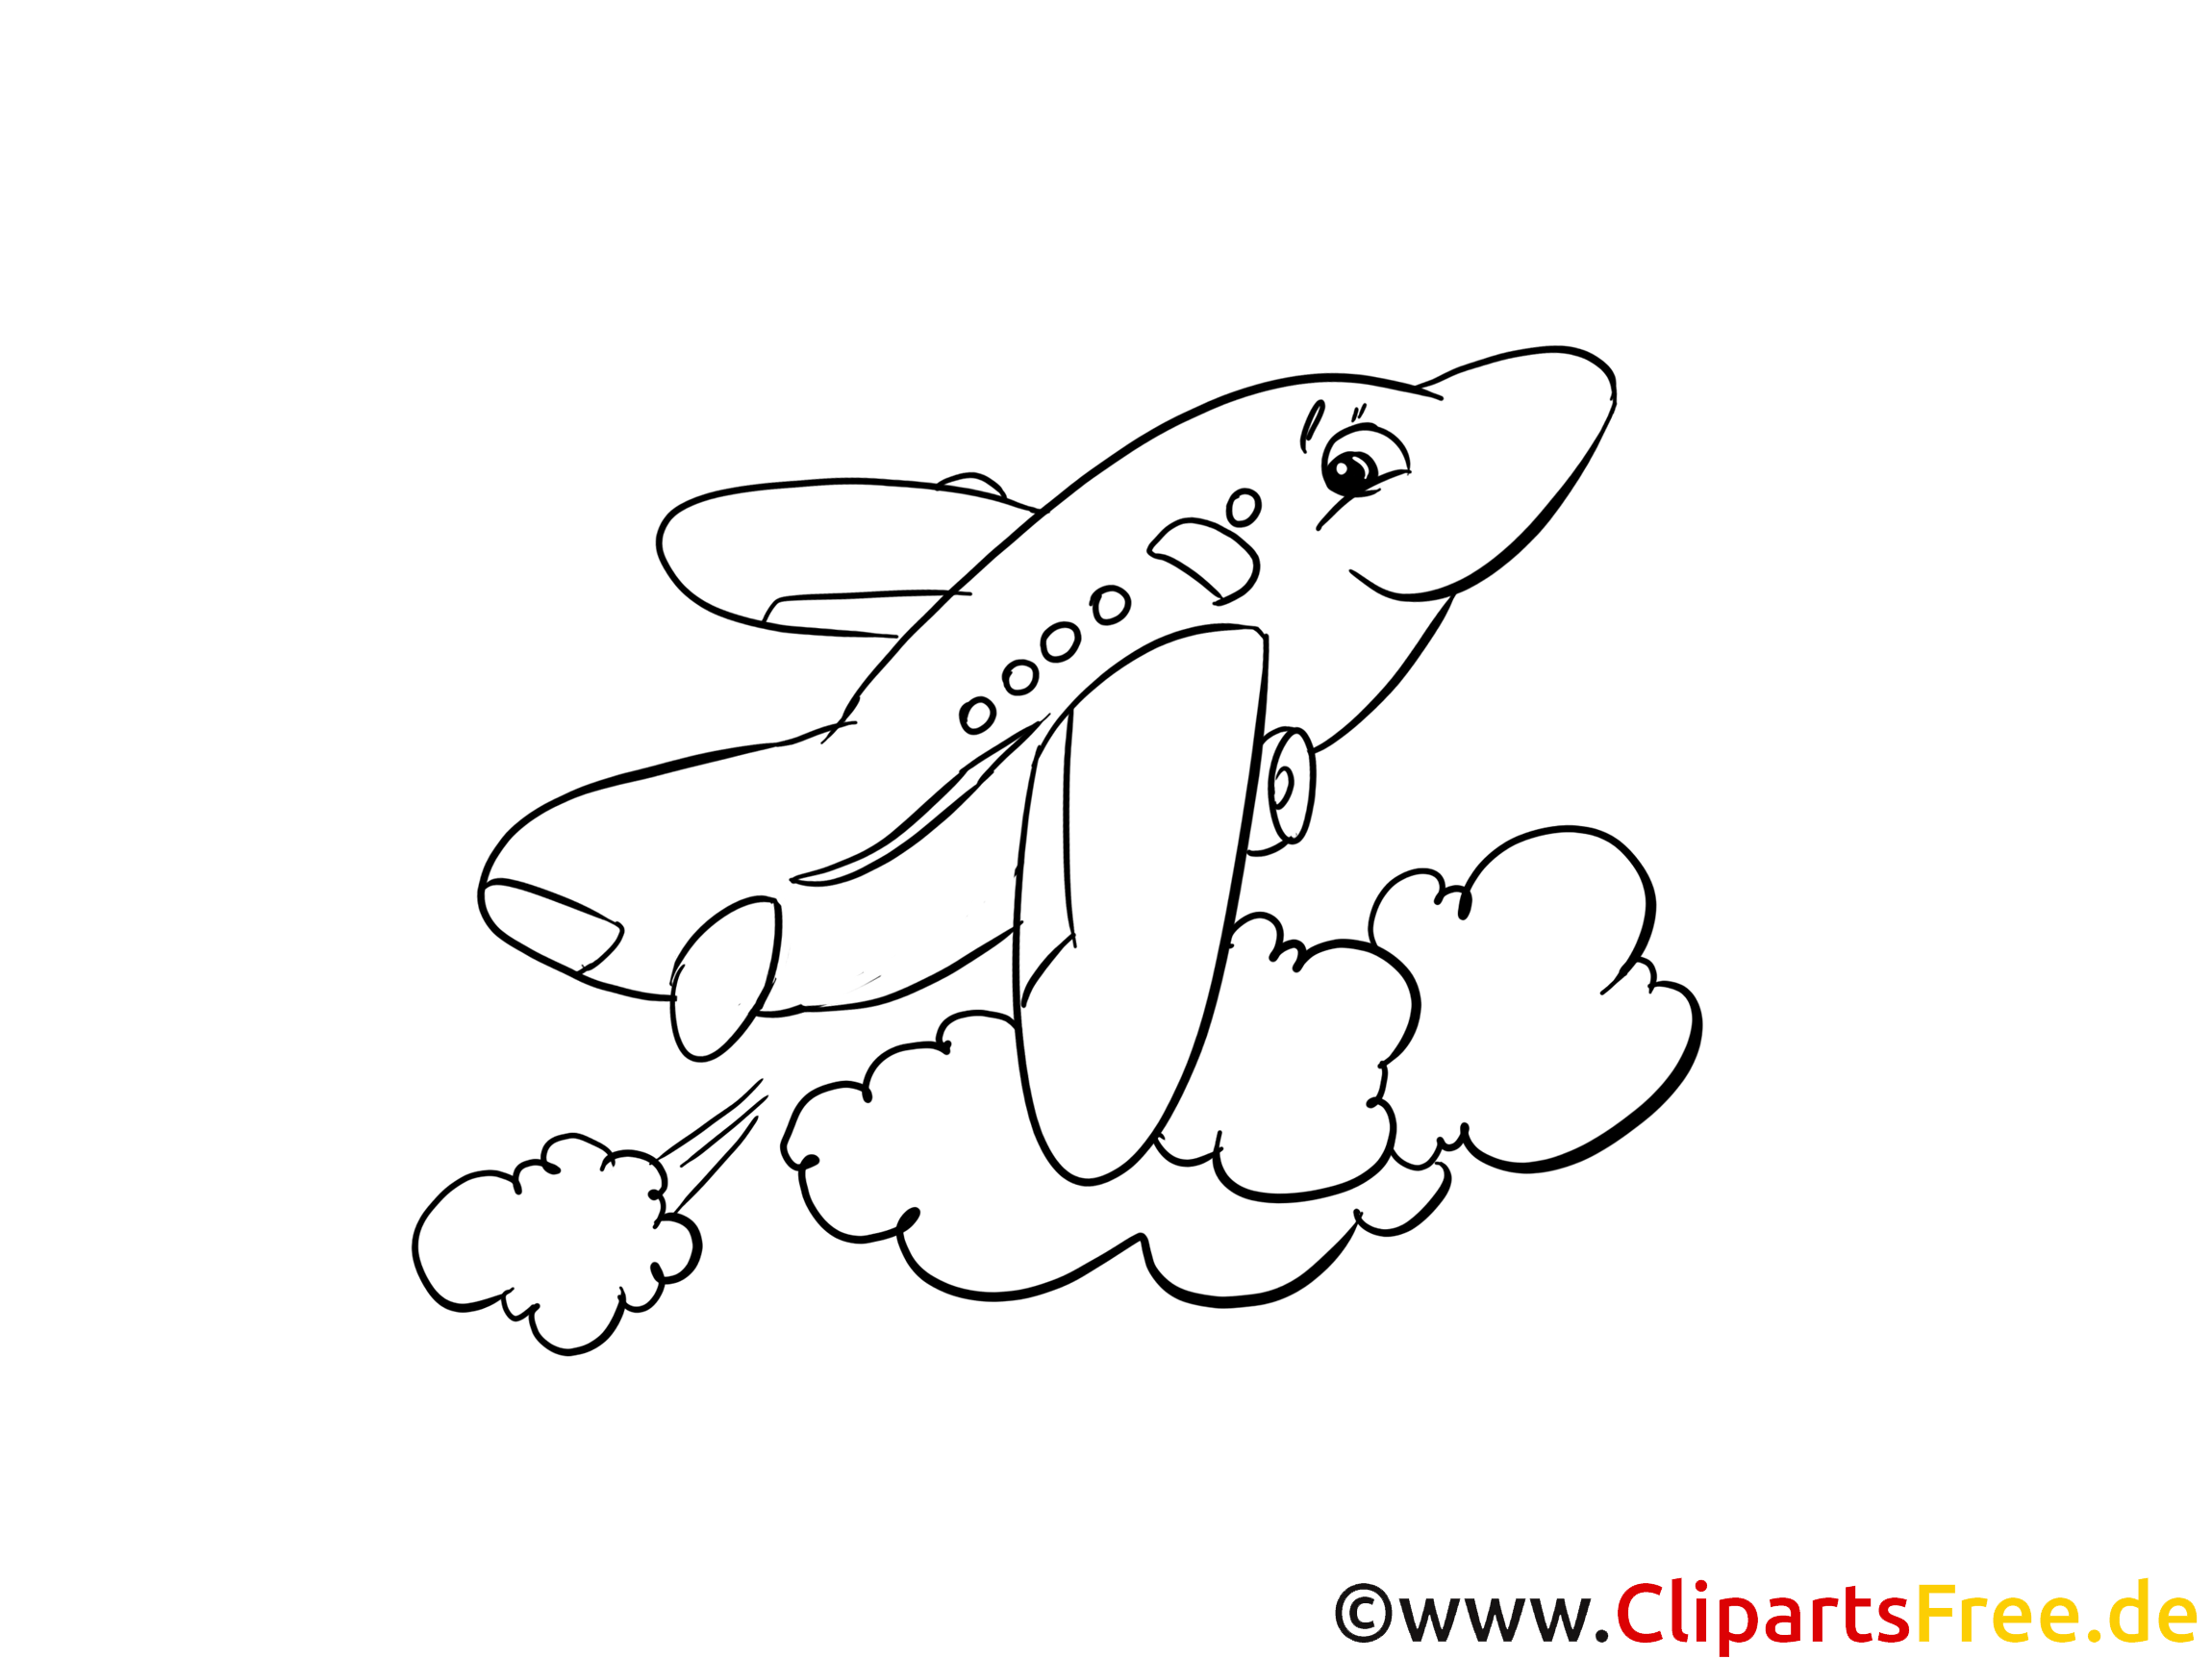 Cartoon Flugzeug Ausmalbild Zum Ausmalen Flugzeug Ausmalbild Malvorlagen Ausmalbild